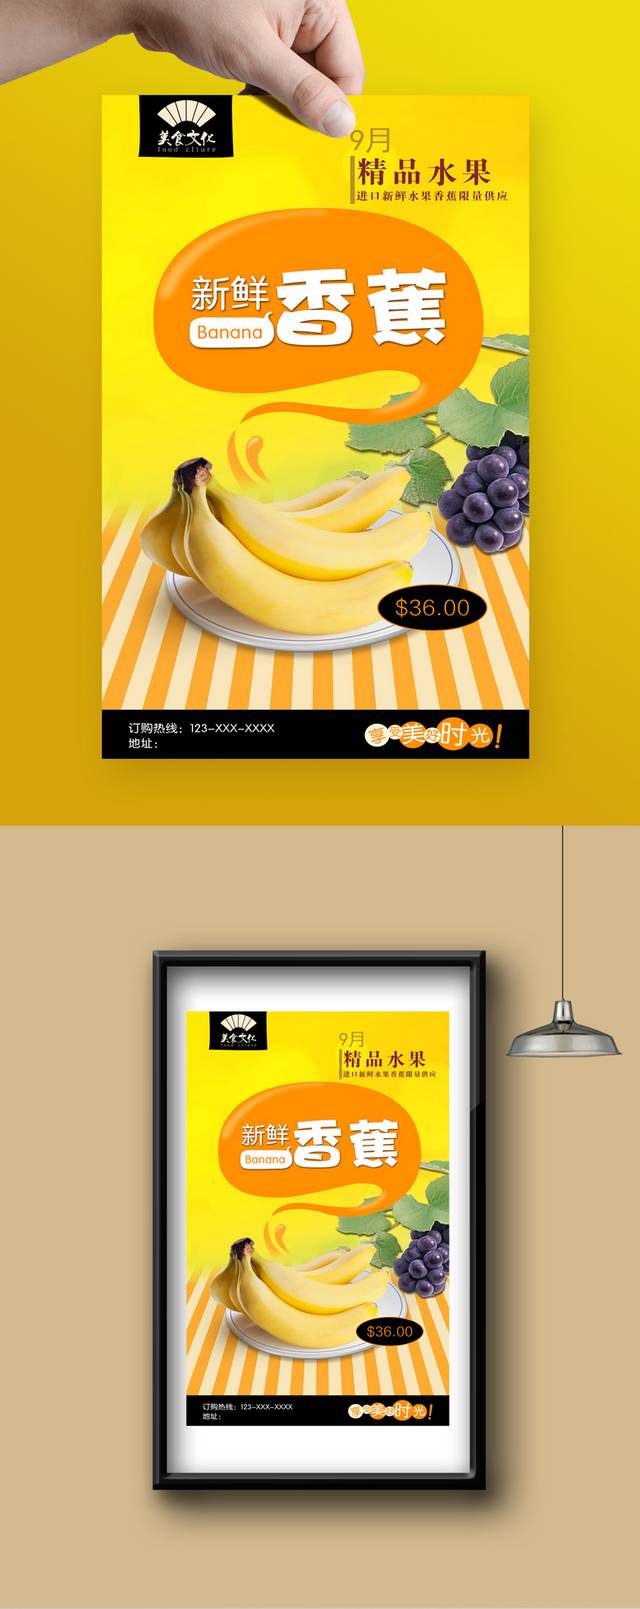 经典香蕉宣传海报设计模板